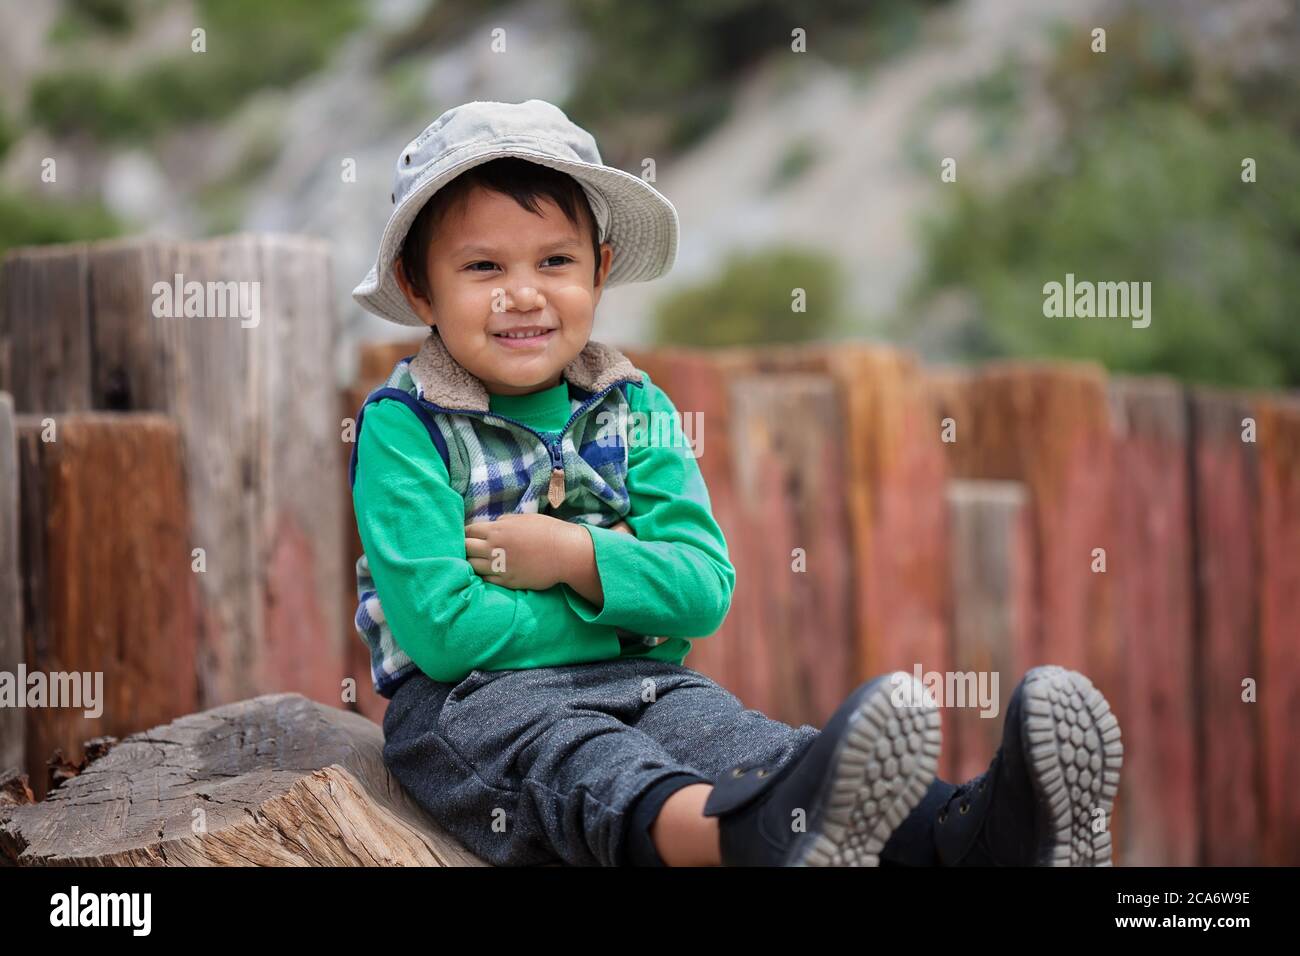 Un niño con los brazos cruzados y sentado, esperando a la cabeza de la trailhead con sus botas de senderismo y sombrero. Foto de stock